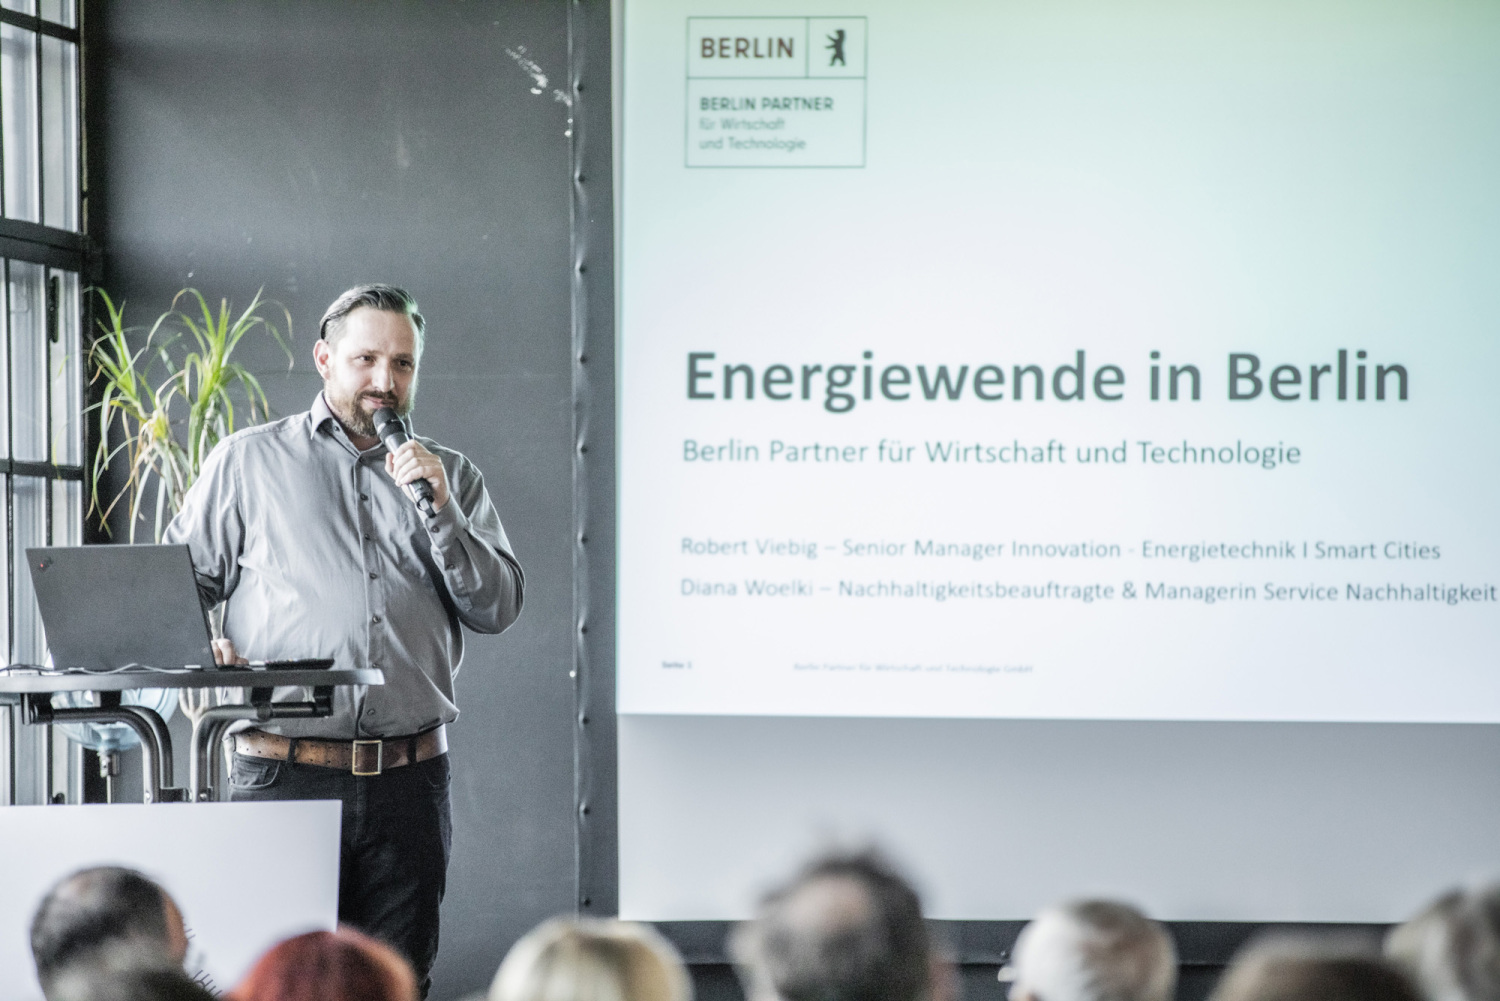 Robert Viebig von Cluster Energietechnik Berlin-Brandenburg für Berlin Partner GmbH